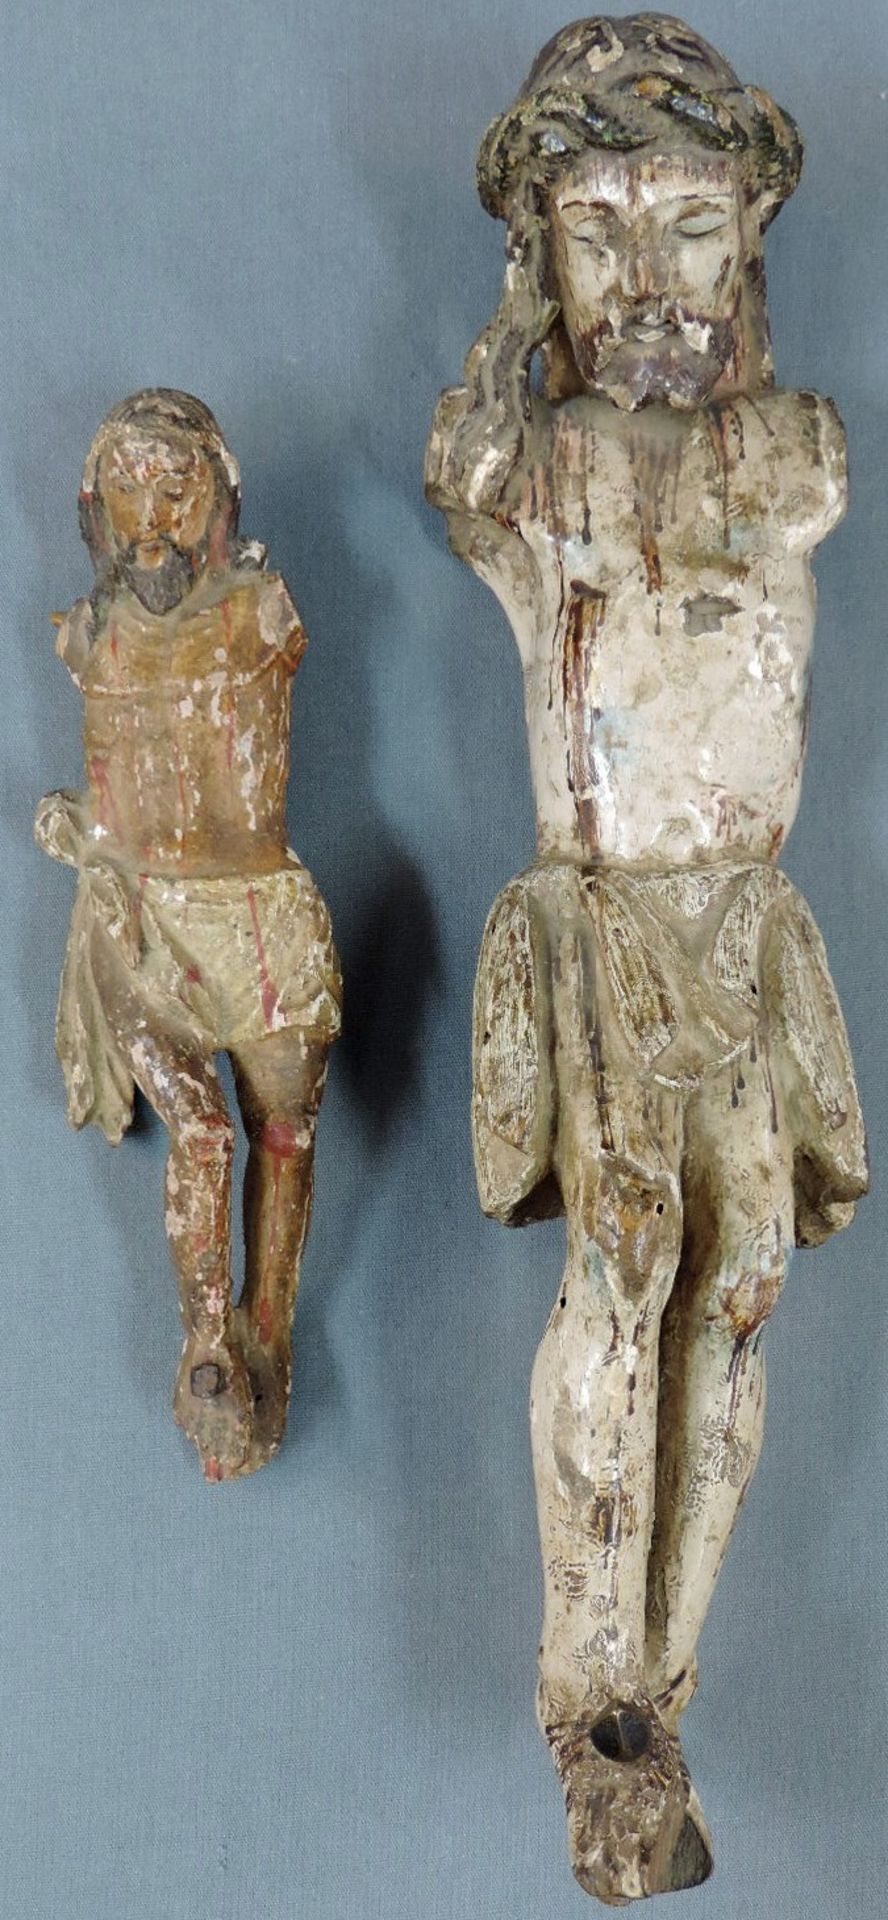 2 Skulpturen des Jesus.21 cm und 36 cm hoch. Holz, geschnitzt und farbig gefasst, Fehlstellen. Nägel